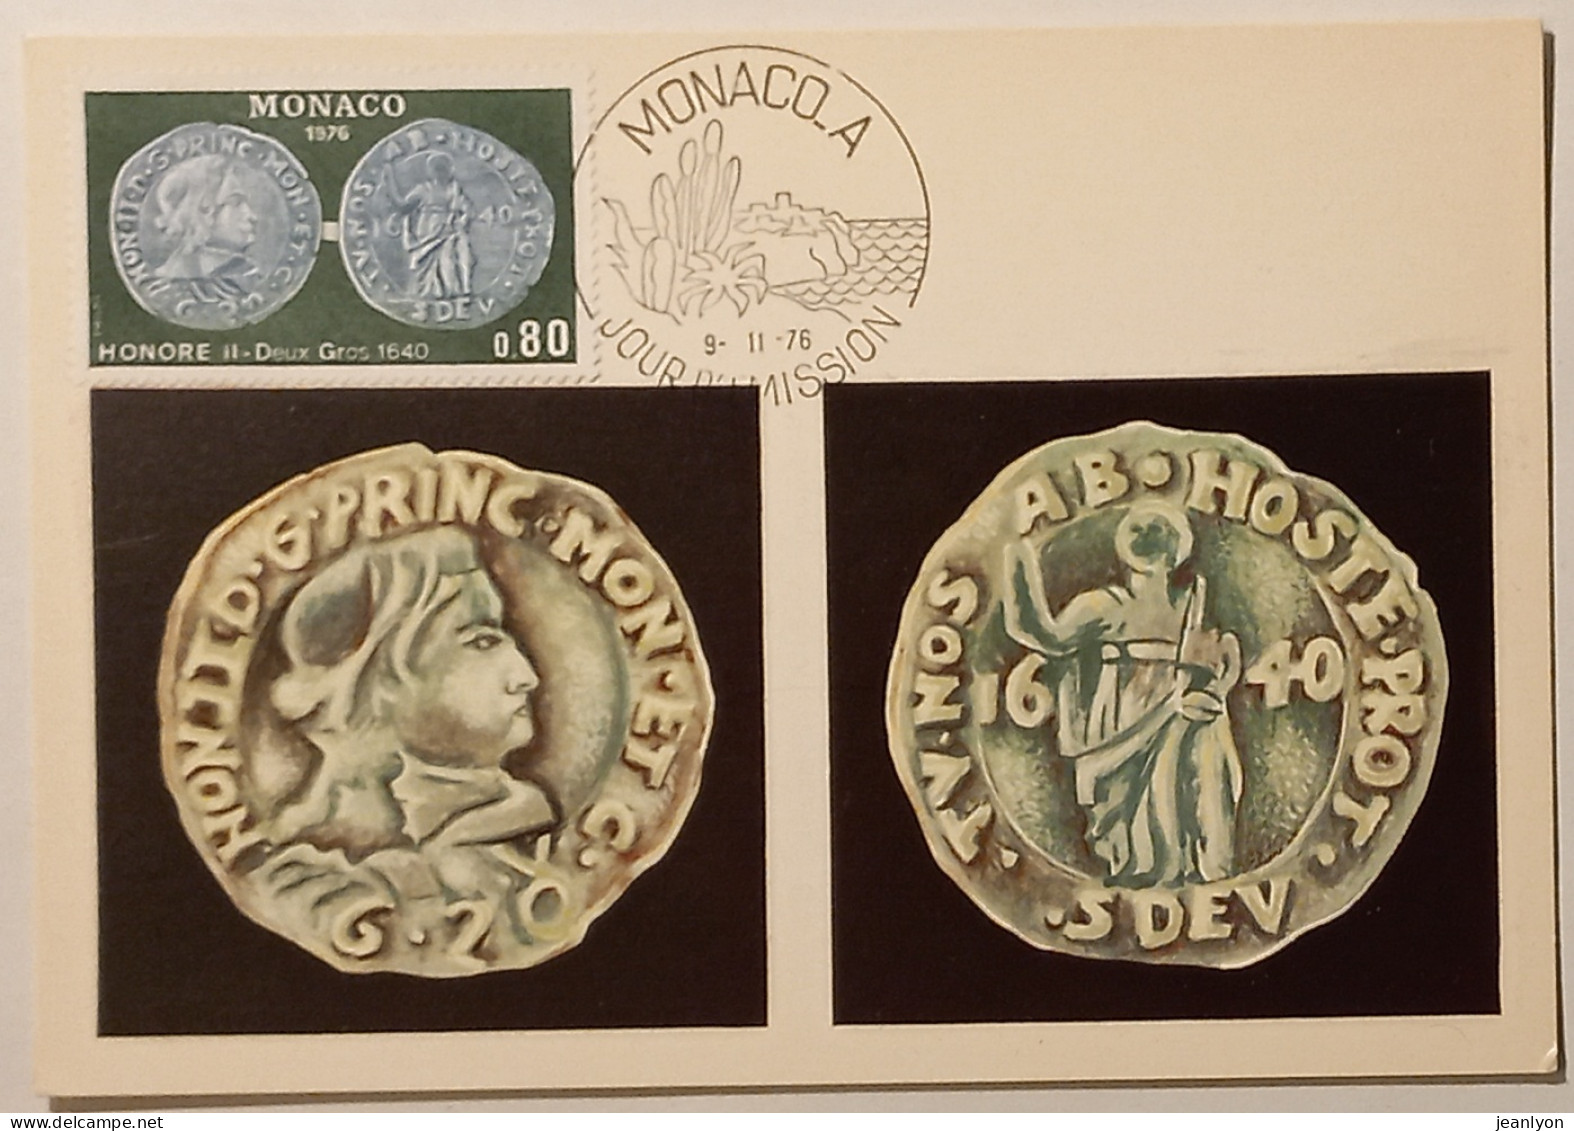 MONNAIE / PIECE HONORE II Deux Gros 1640 - Carte Philatélique Monaco Avec Timbre Et Cachet 1er Jour - Coins (pictures)